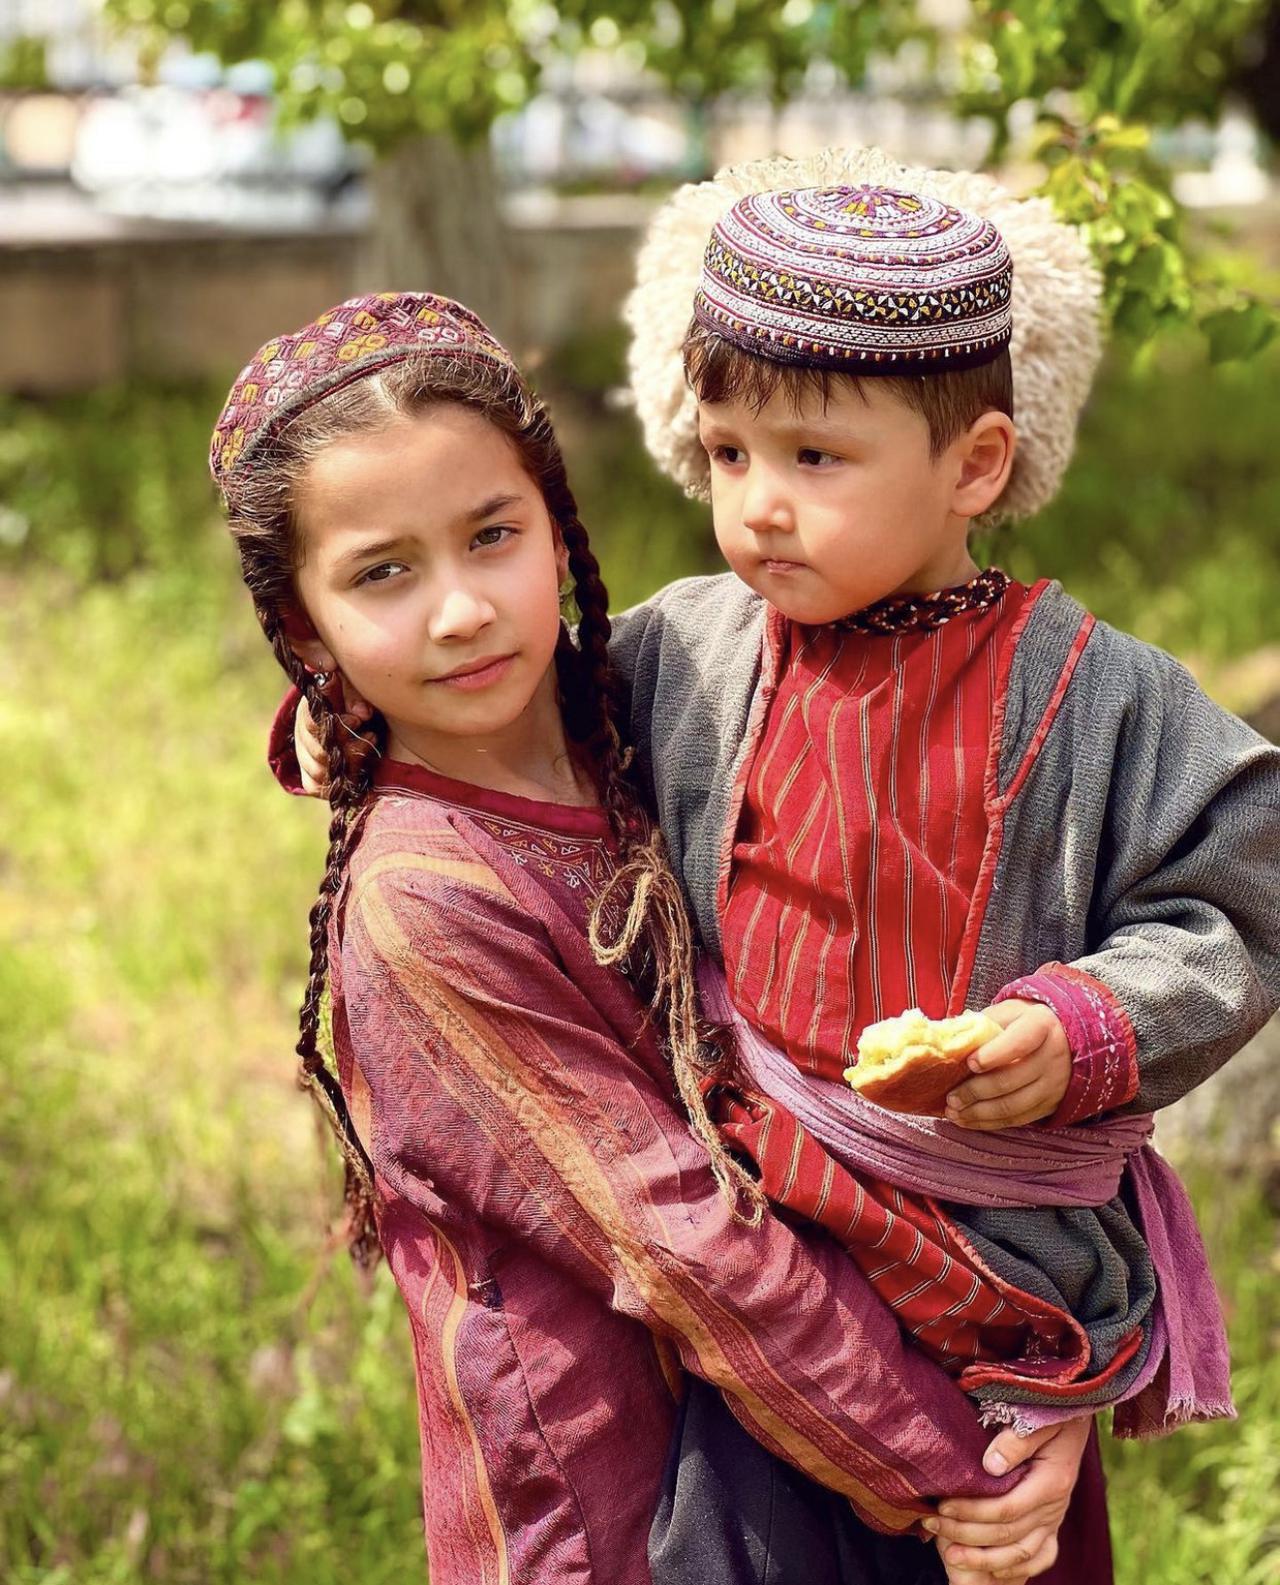 Фотографии со съёмок нового фильма #Istarin 🎬😍 Посмотрите на наших детишек актёров ❤️ One love 🇹🇲  Фото: @annushtashli 